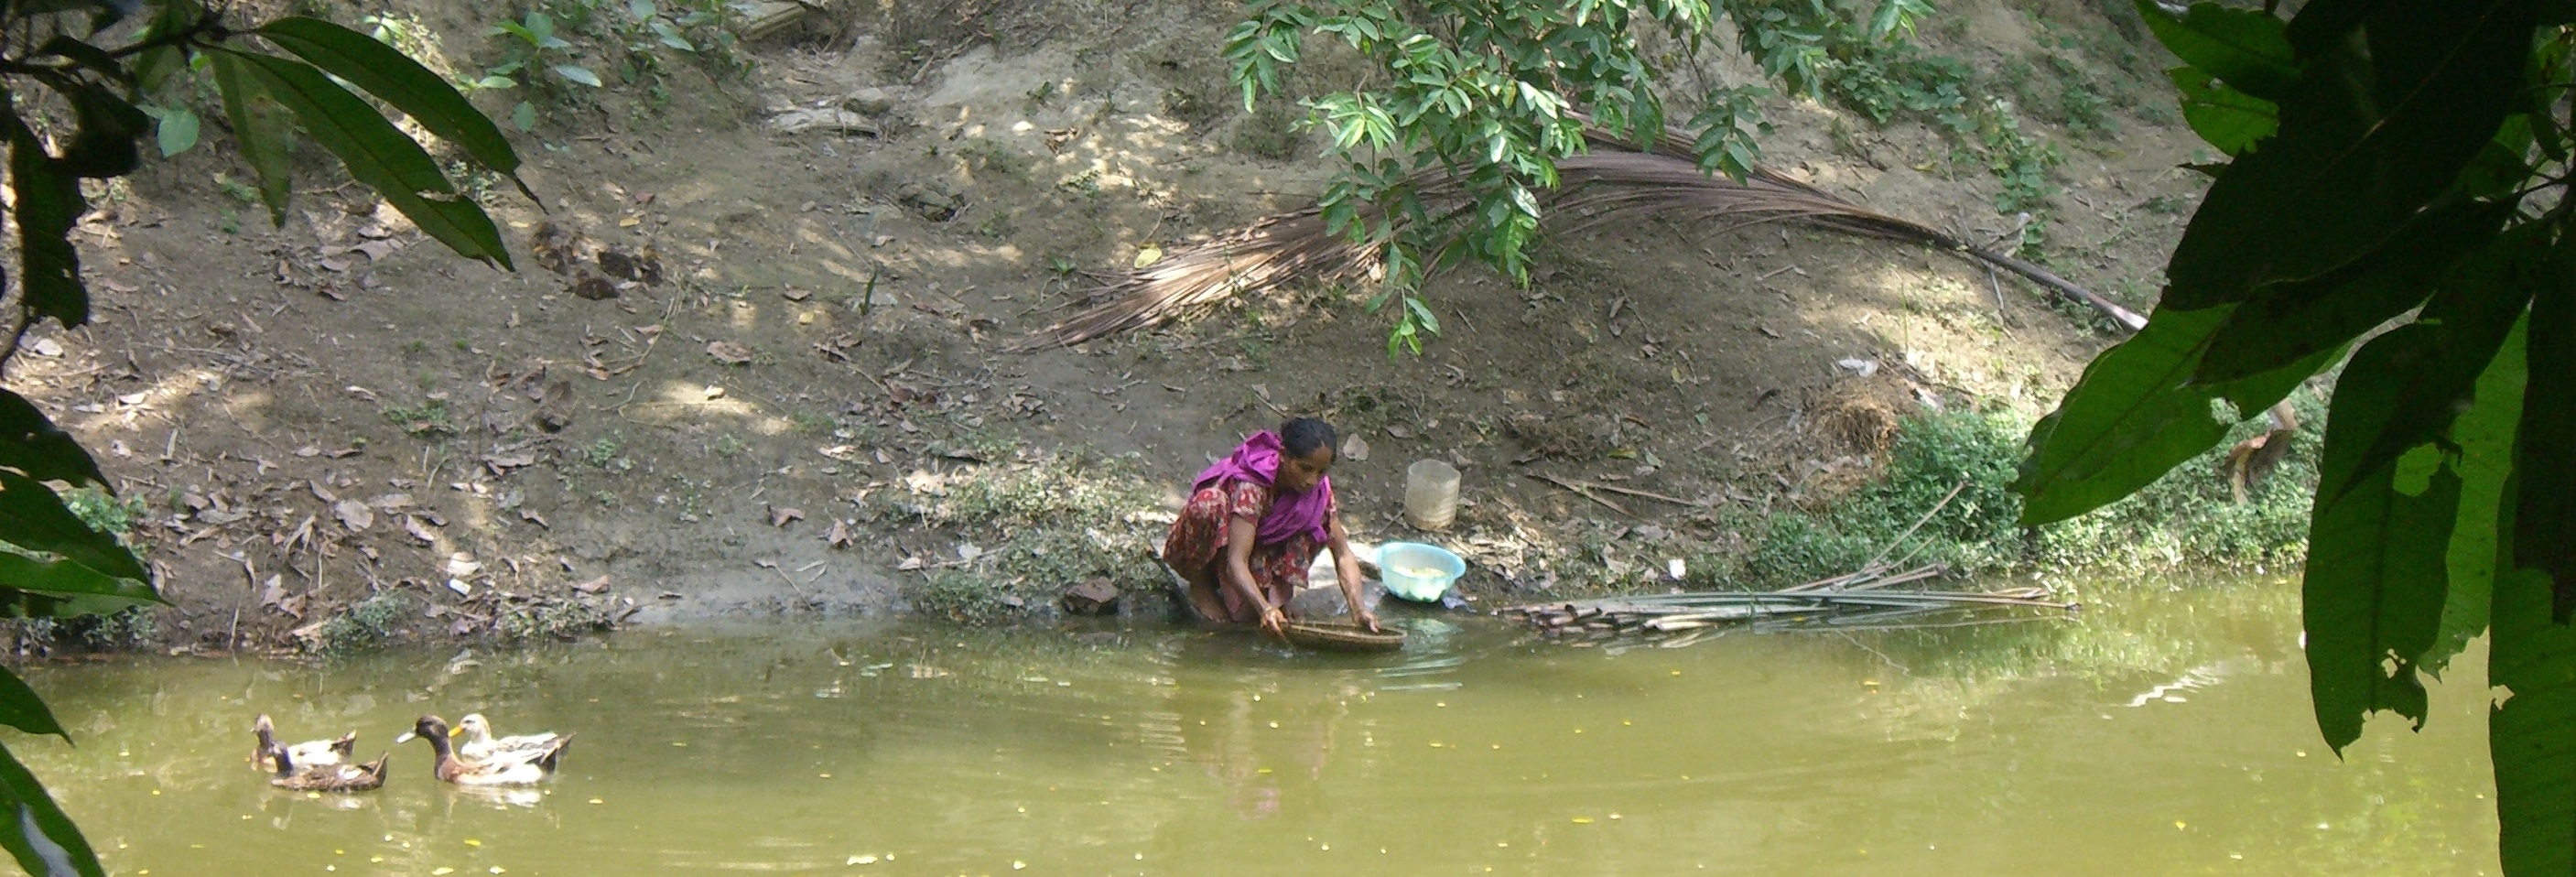 A woman at a river in Bangladesh